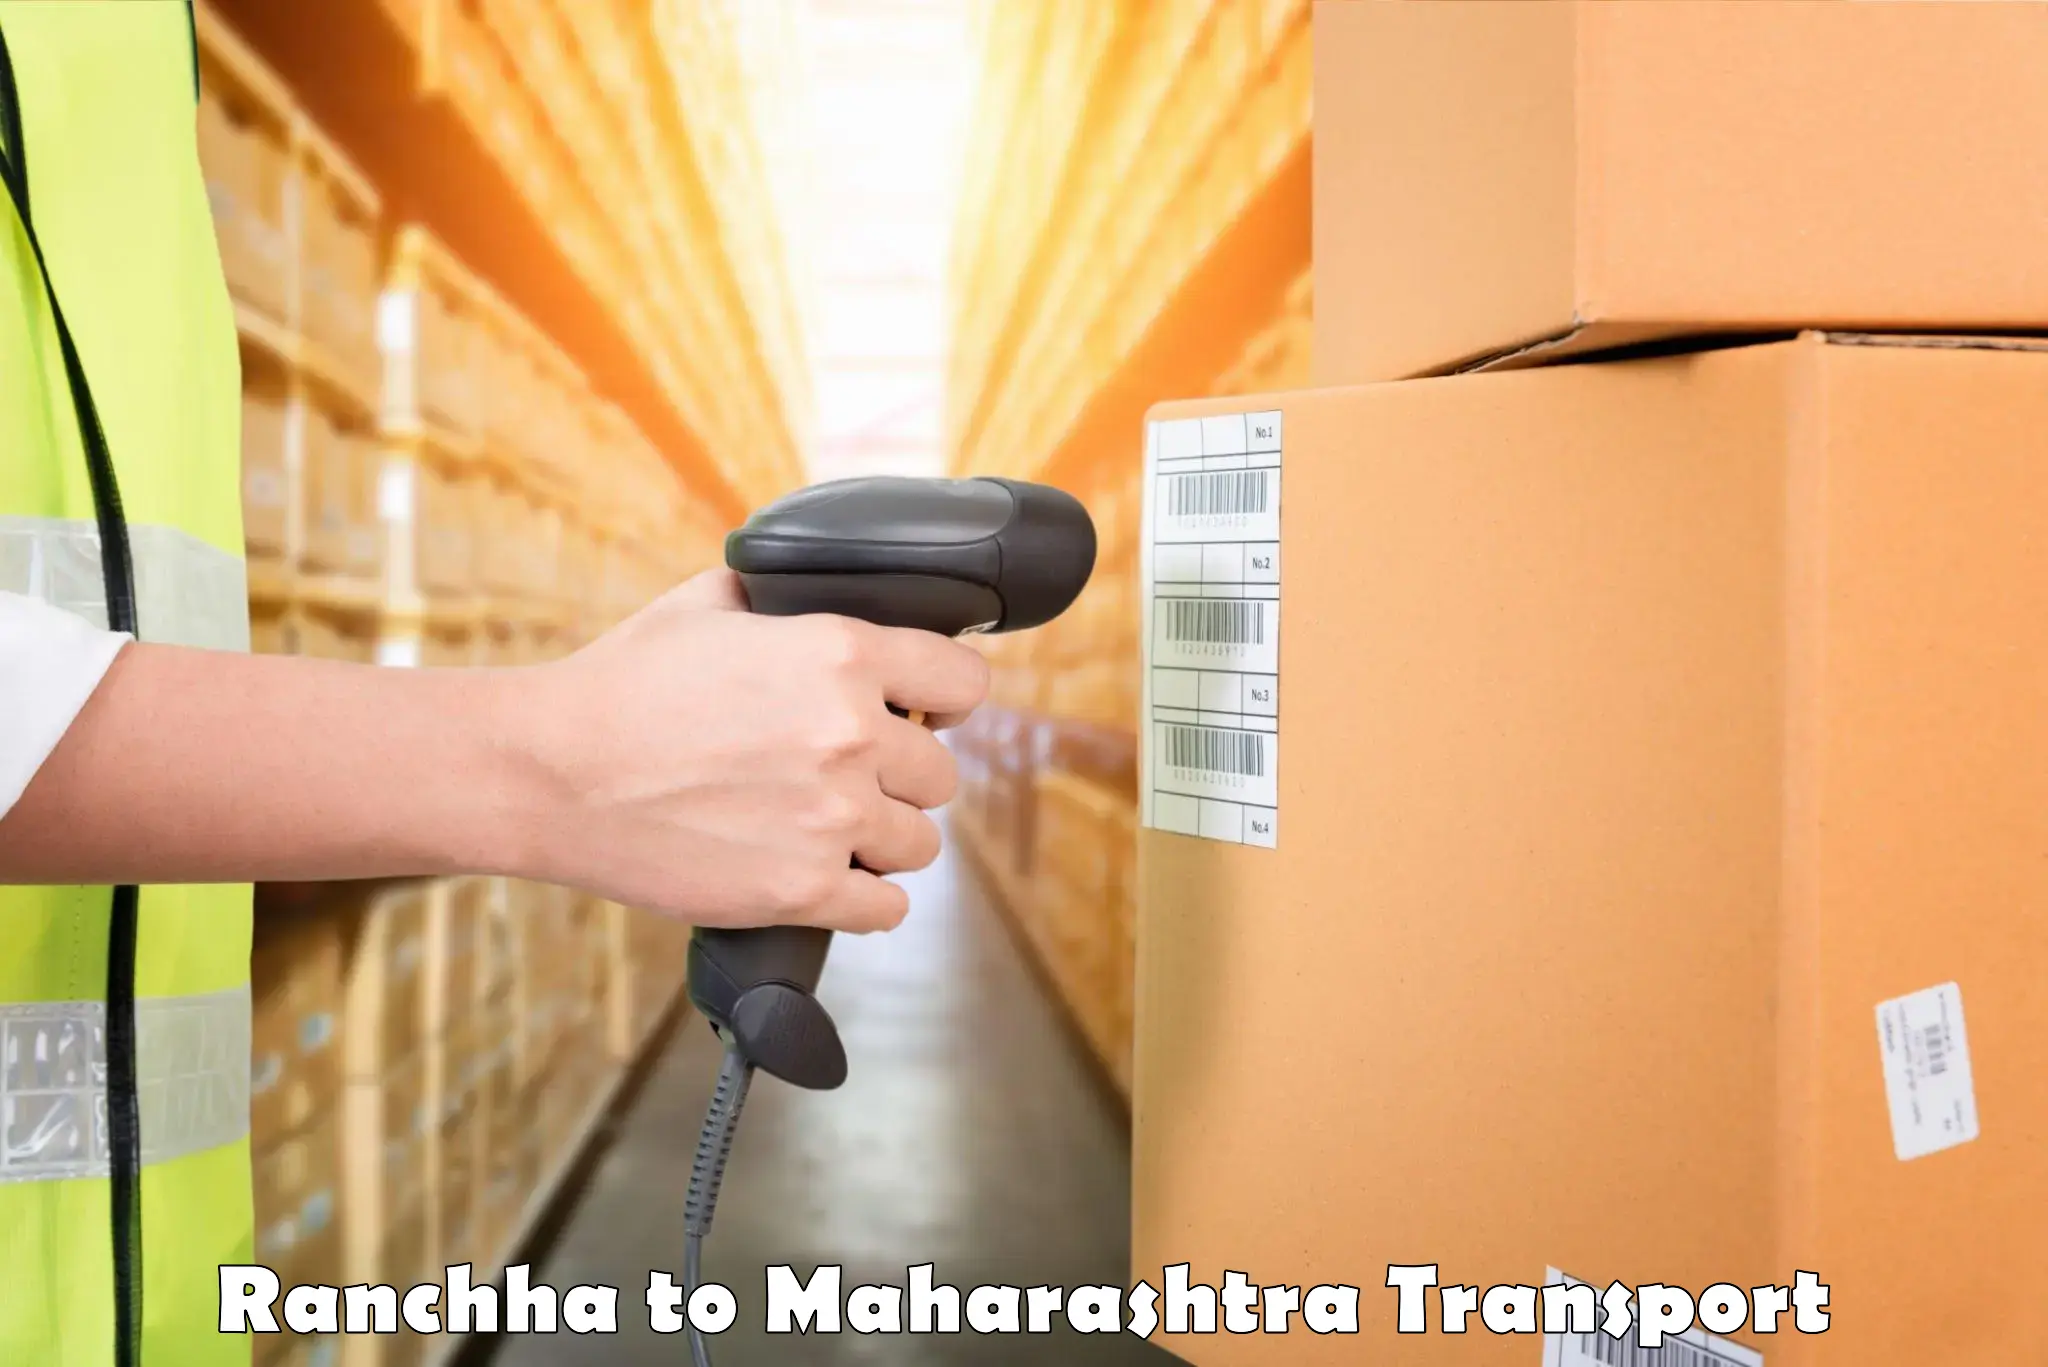 Shipping partner Ranchha to Osmanabad